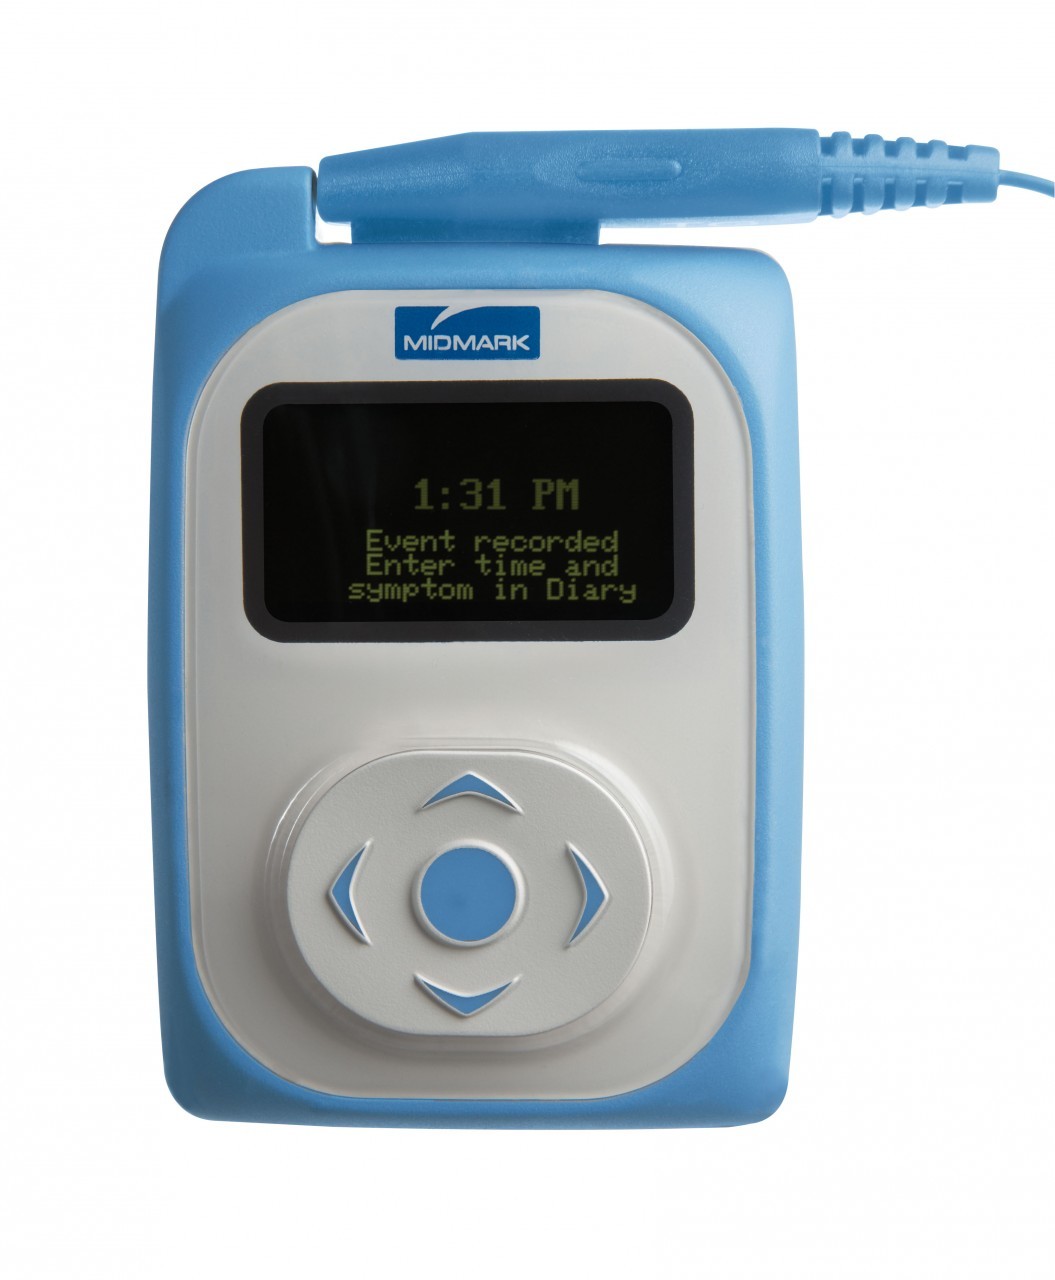 参比制剂,进口原料药,医药原料药 Midmark Iqholter # 4-000-0110 - IQholter Digital Holter & Recorder, No Software, Each